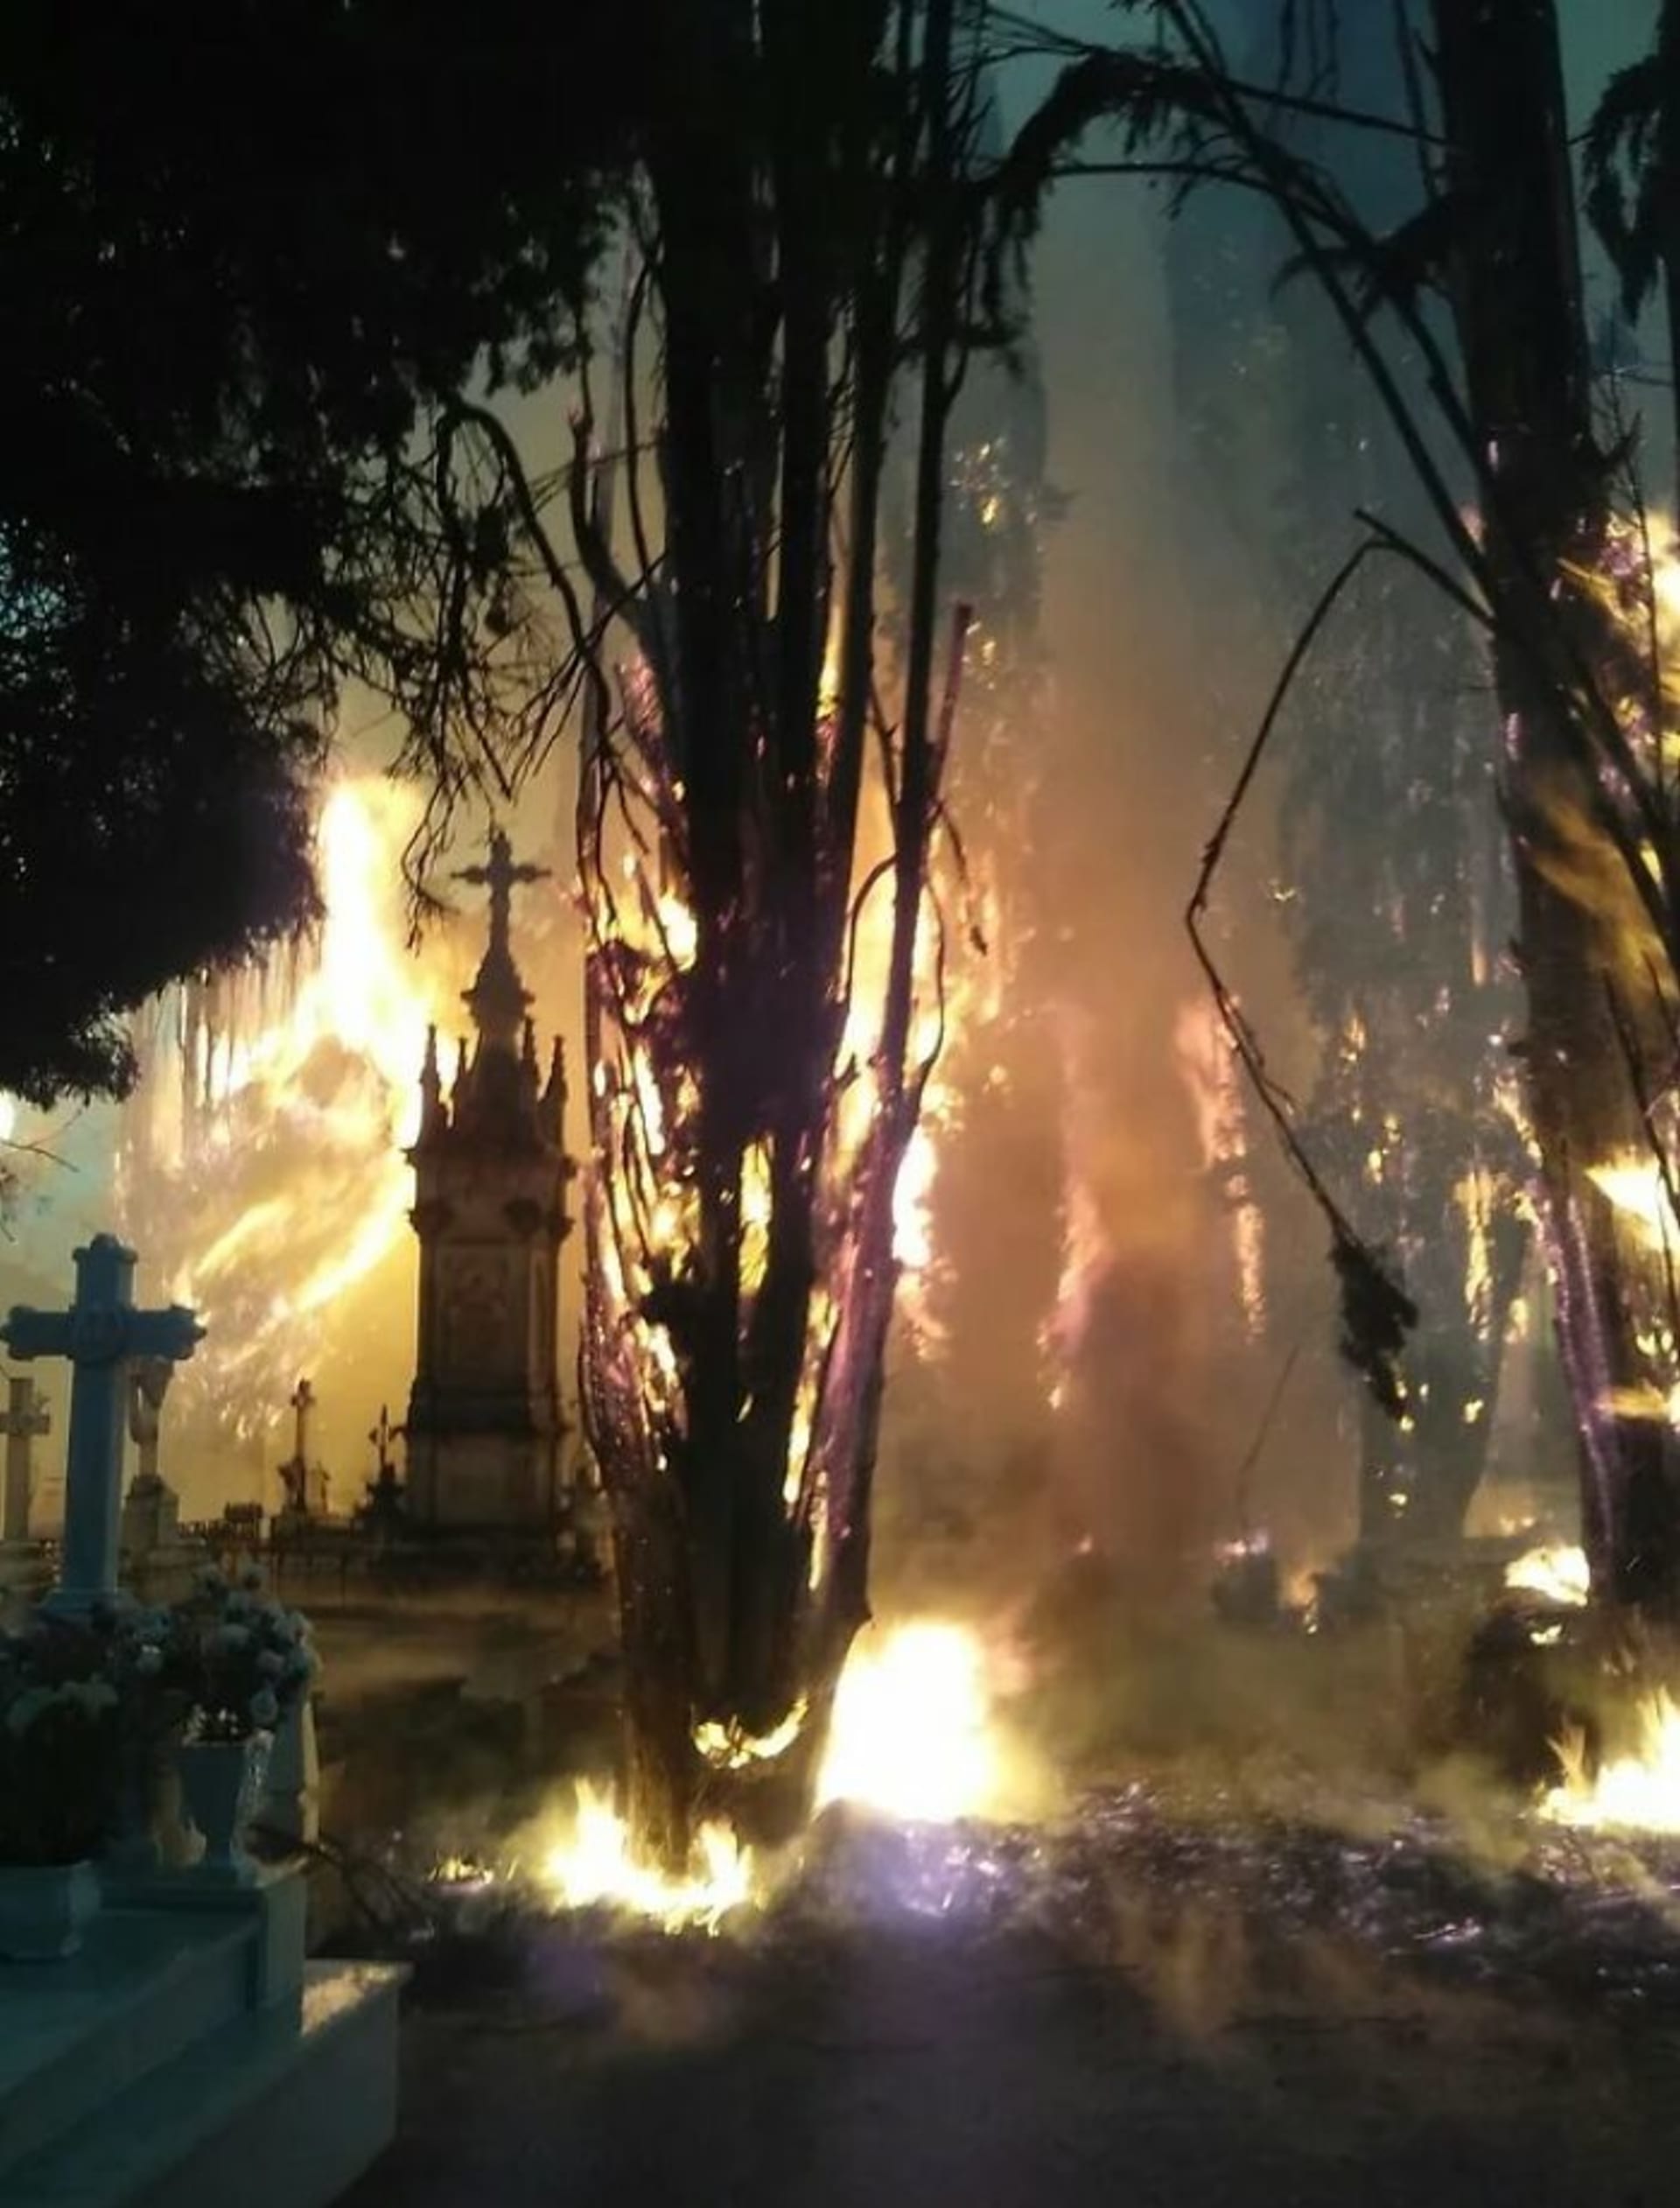 Hořící hřbitov vypadá jako finální scéna z hororu